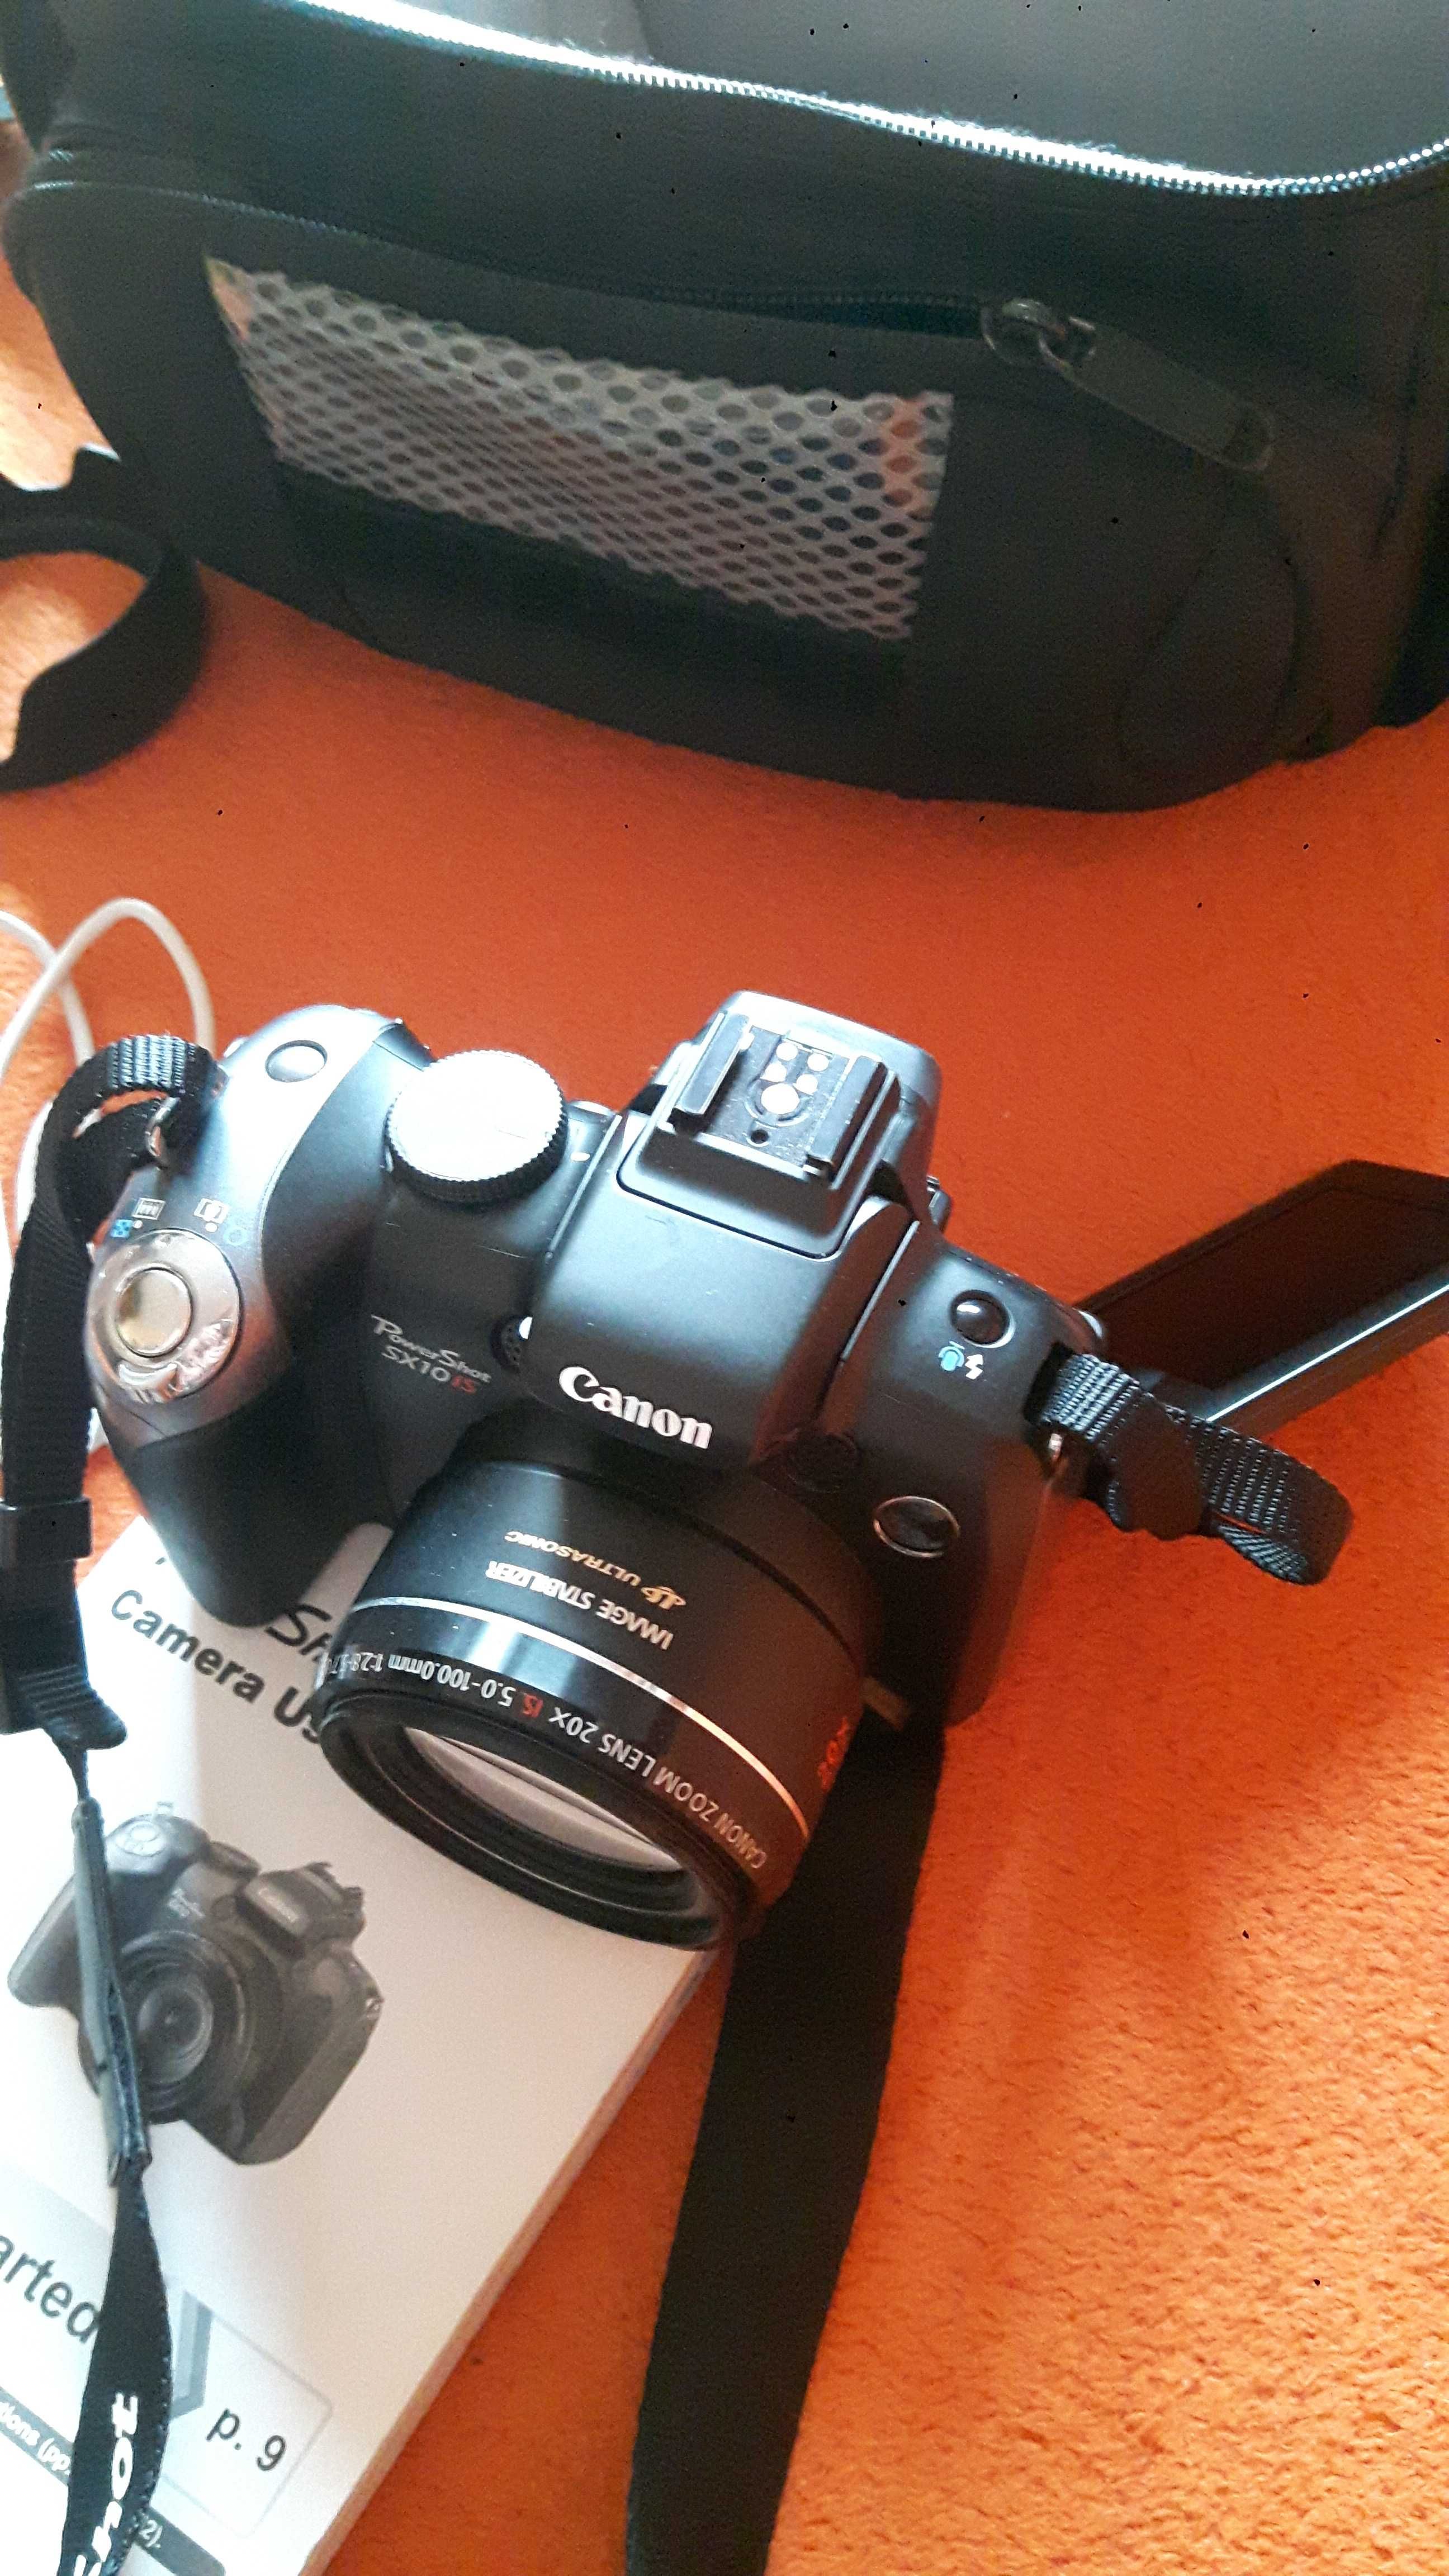 Aparat Canon PowerShot SX10IS Zadbany w pokrowcu